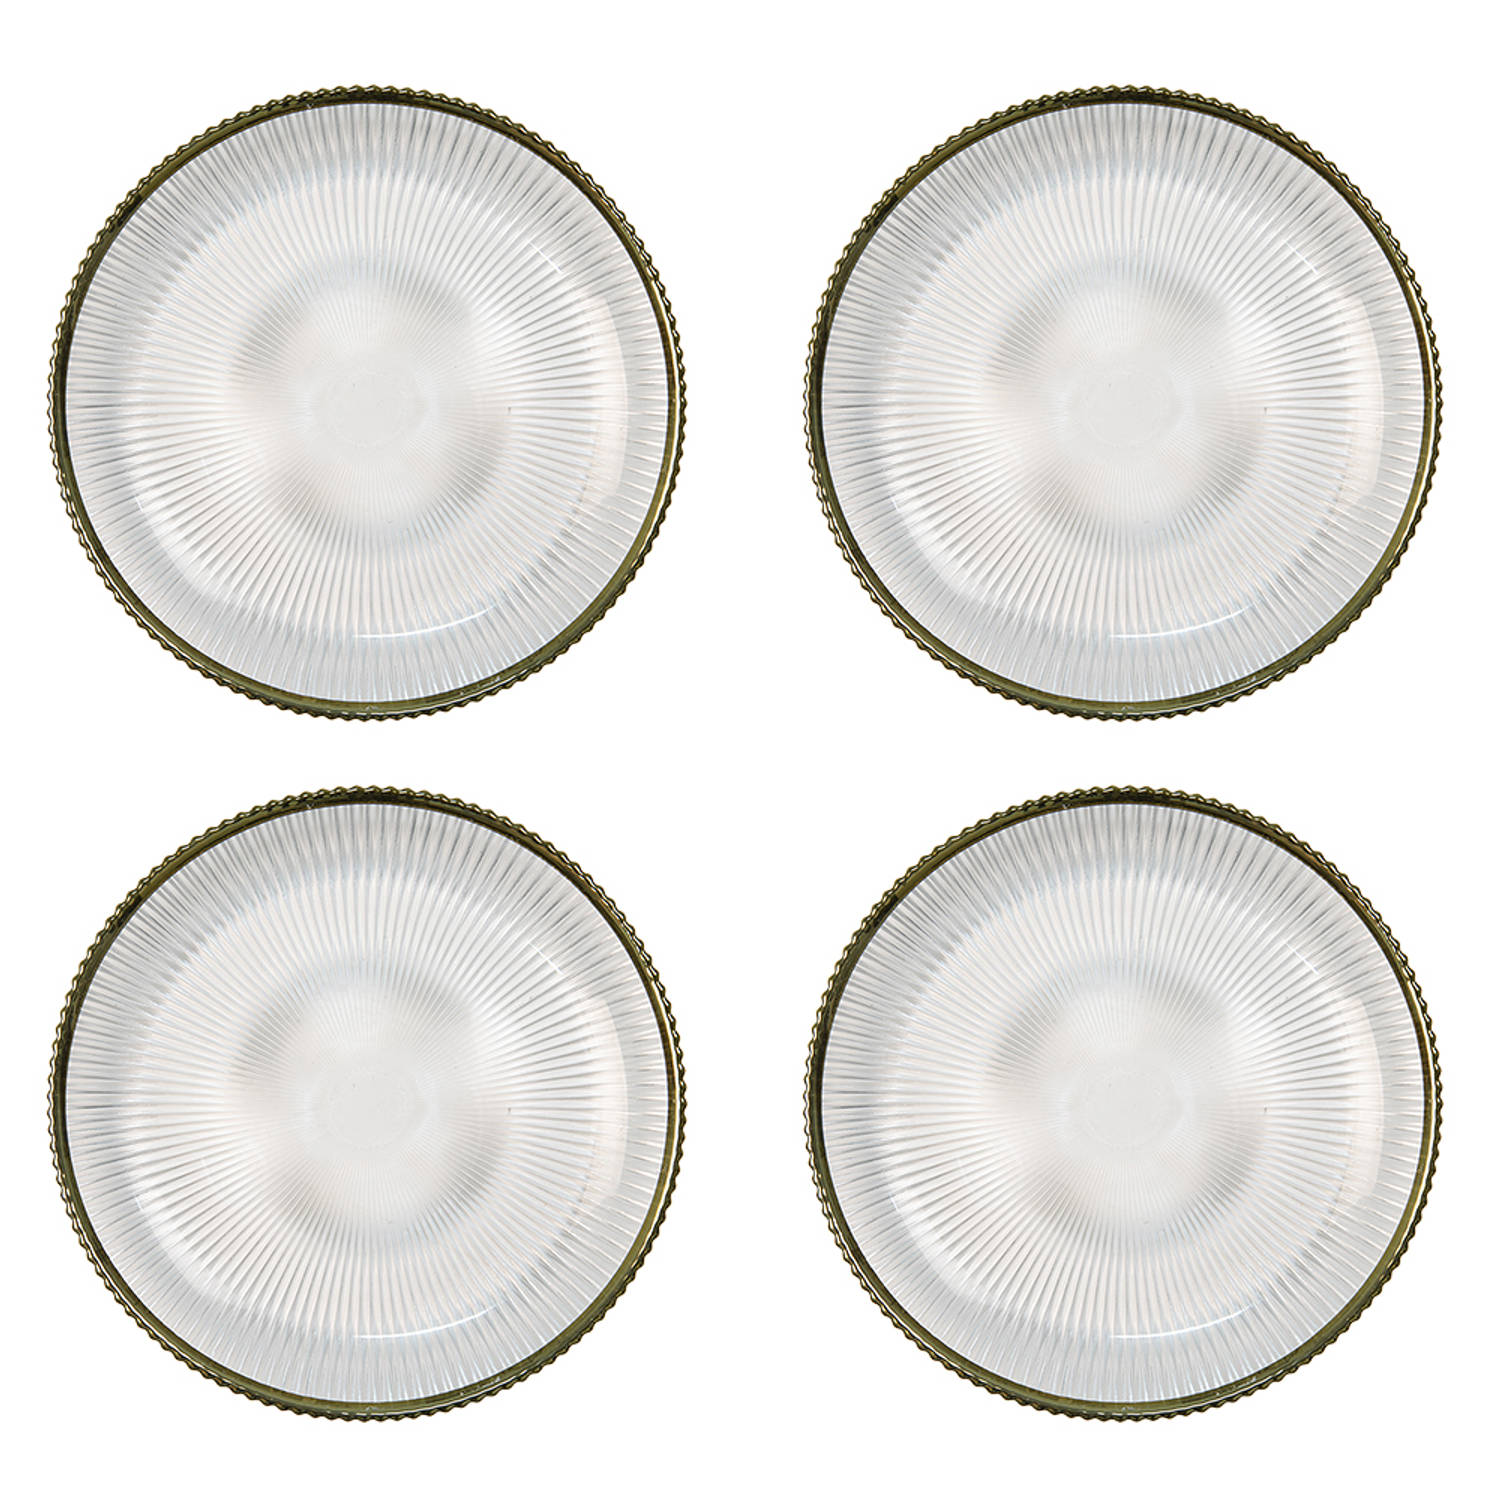 HAES DECO - Ontbijtborden set van 4 - Formaat Ø 20x2 cm - kleuren Transparant - Bedrukt Glas - Collectie: Golden Cheers - Servies, kleine borden